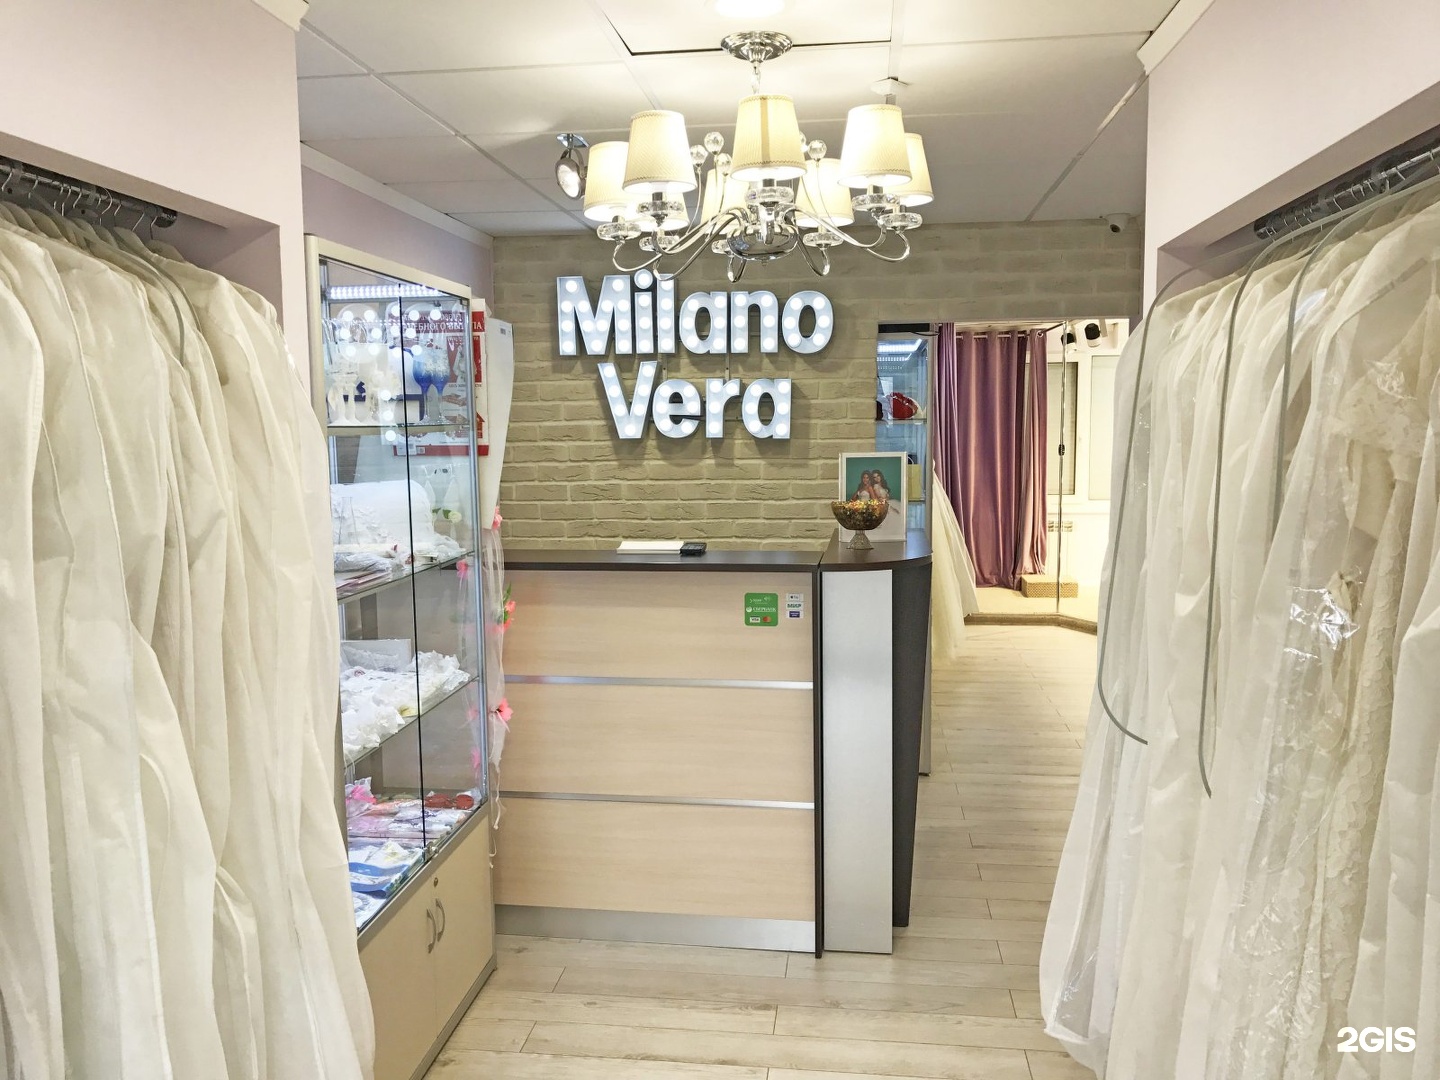 Салон на парнасе. Milano Vera свадебный салон. Энгельса 115 магазины одежды. Татищева 4 б салон Милано стайла.